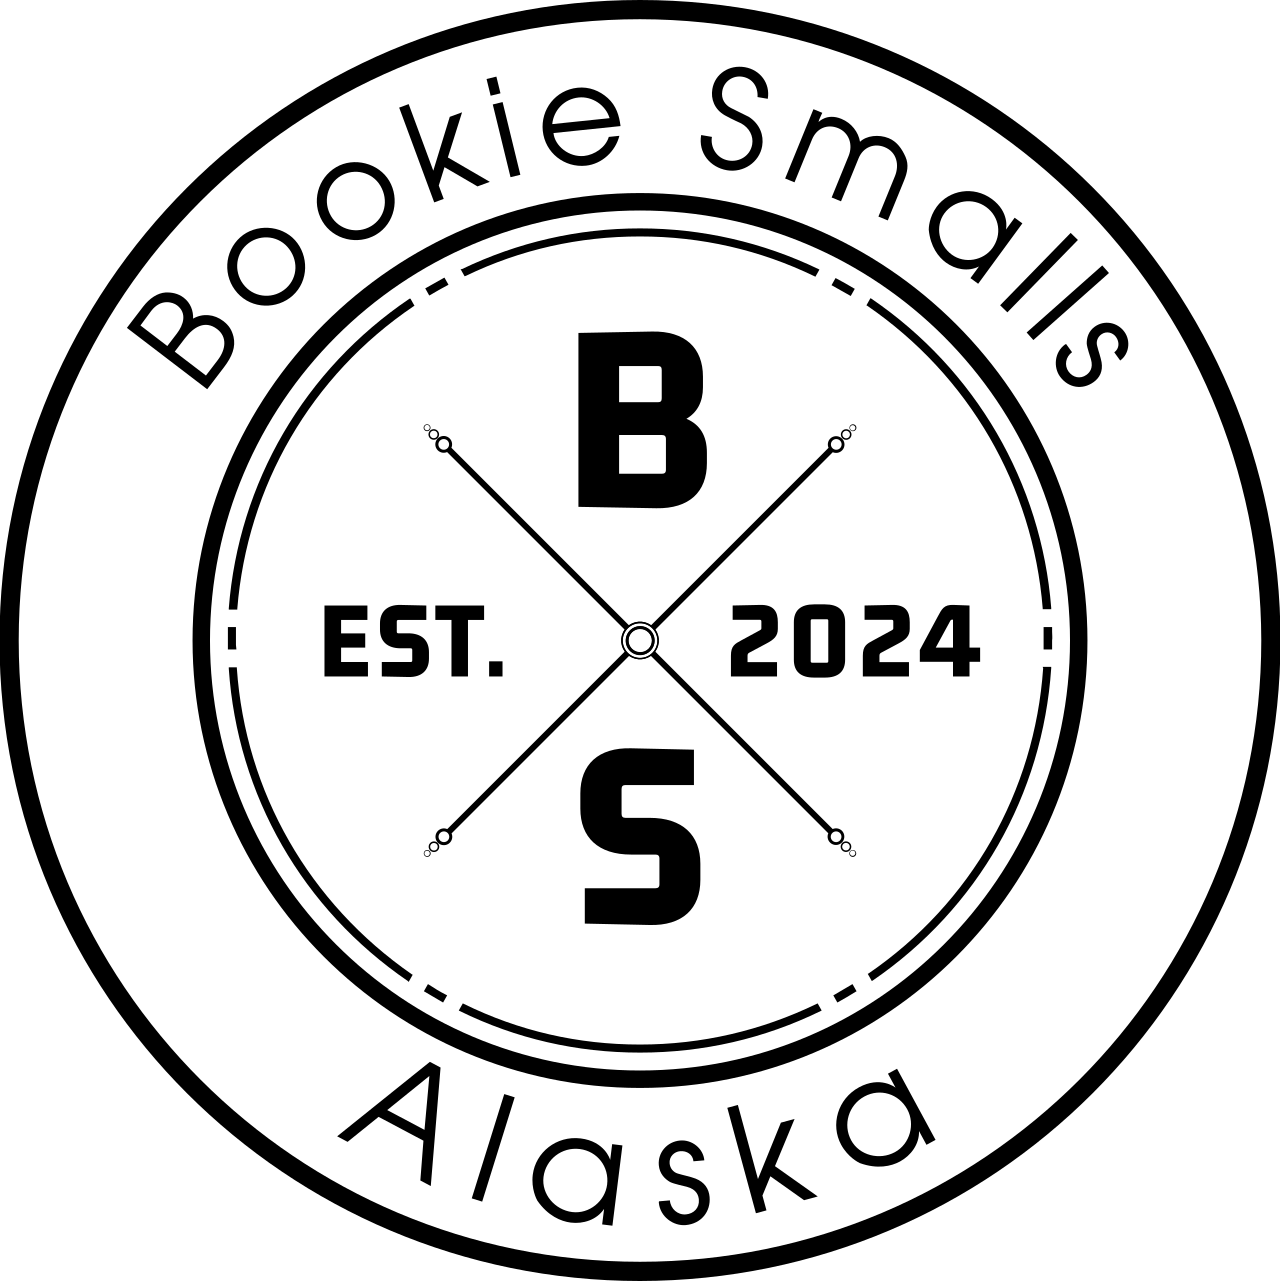 Bookie Smalls's logo